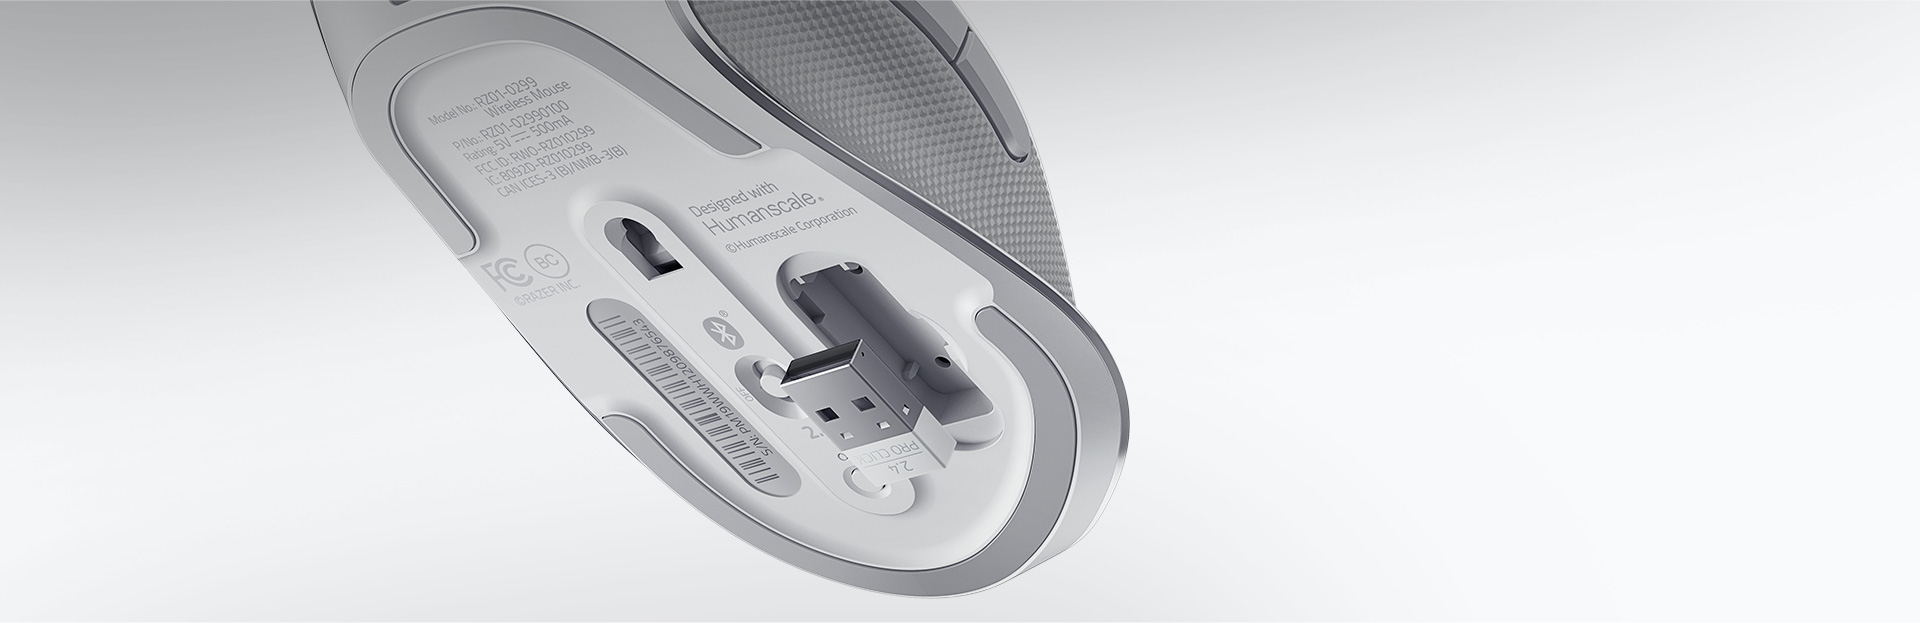 Chuột không dây Razer Pro Click Humanscale (USB/Led trắng) (RZ01-02990100-R3M1) trang bị mắt cảm biến cao cấp